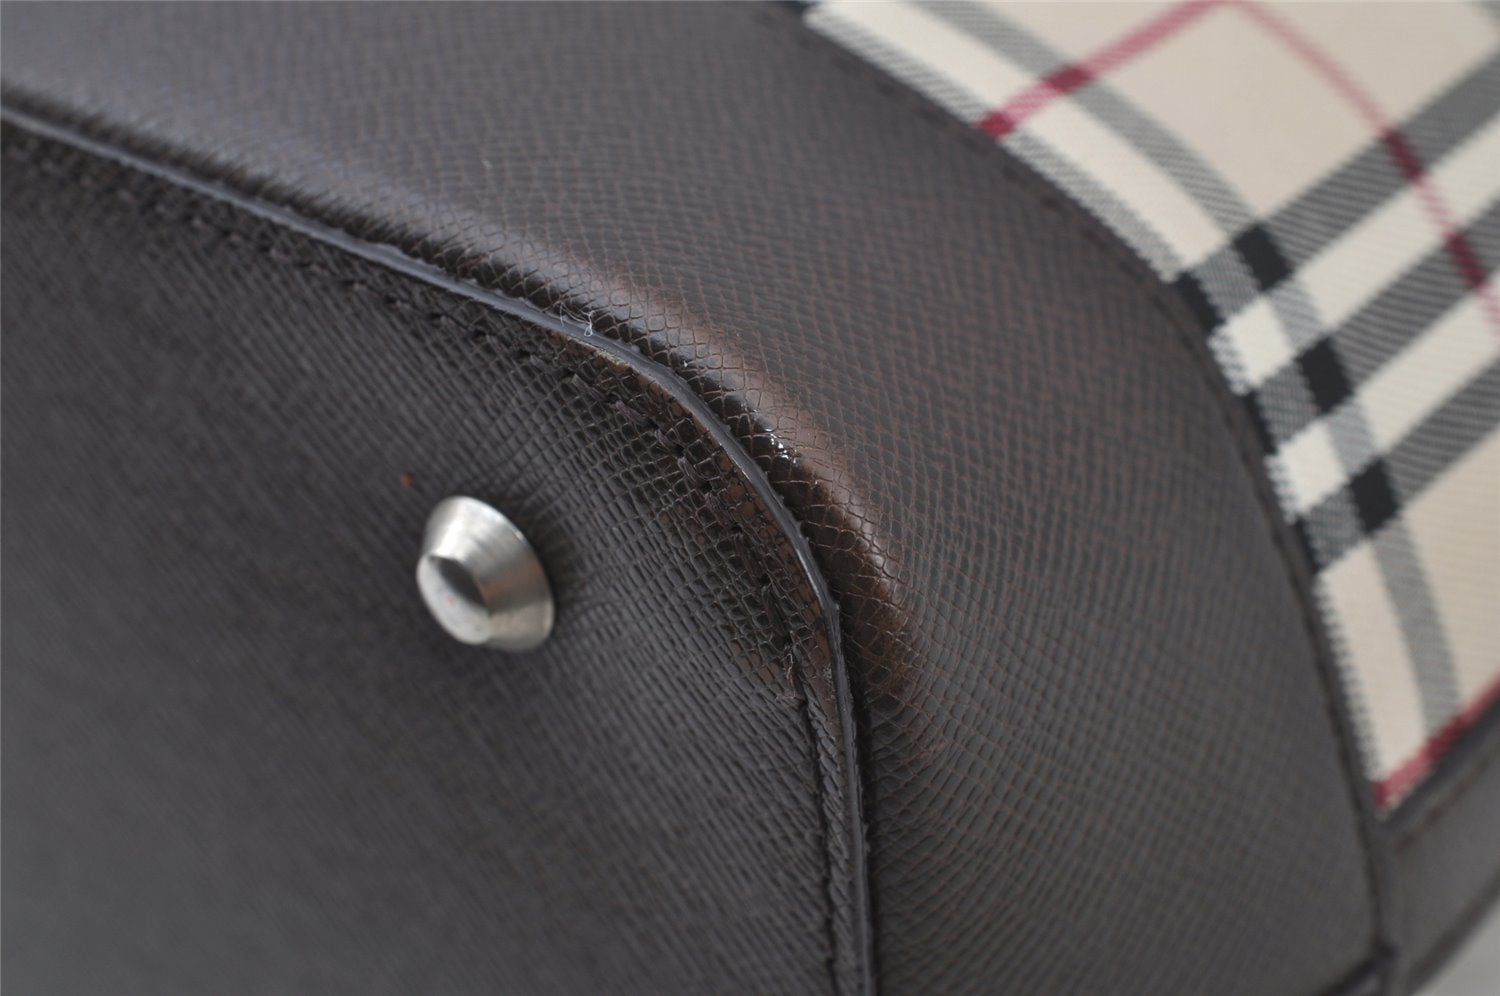 Authentic BURBERRY Nova Vintage Check Canvas Leather Hand Bag Purse Beige 2312J